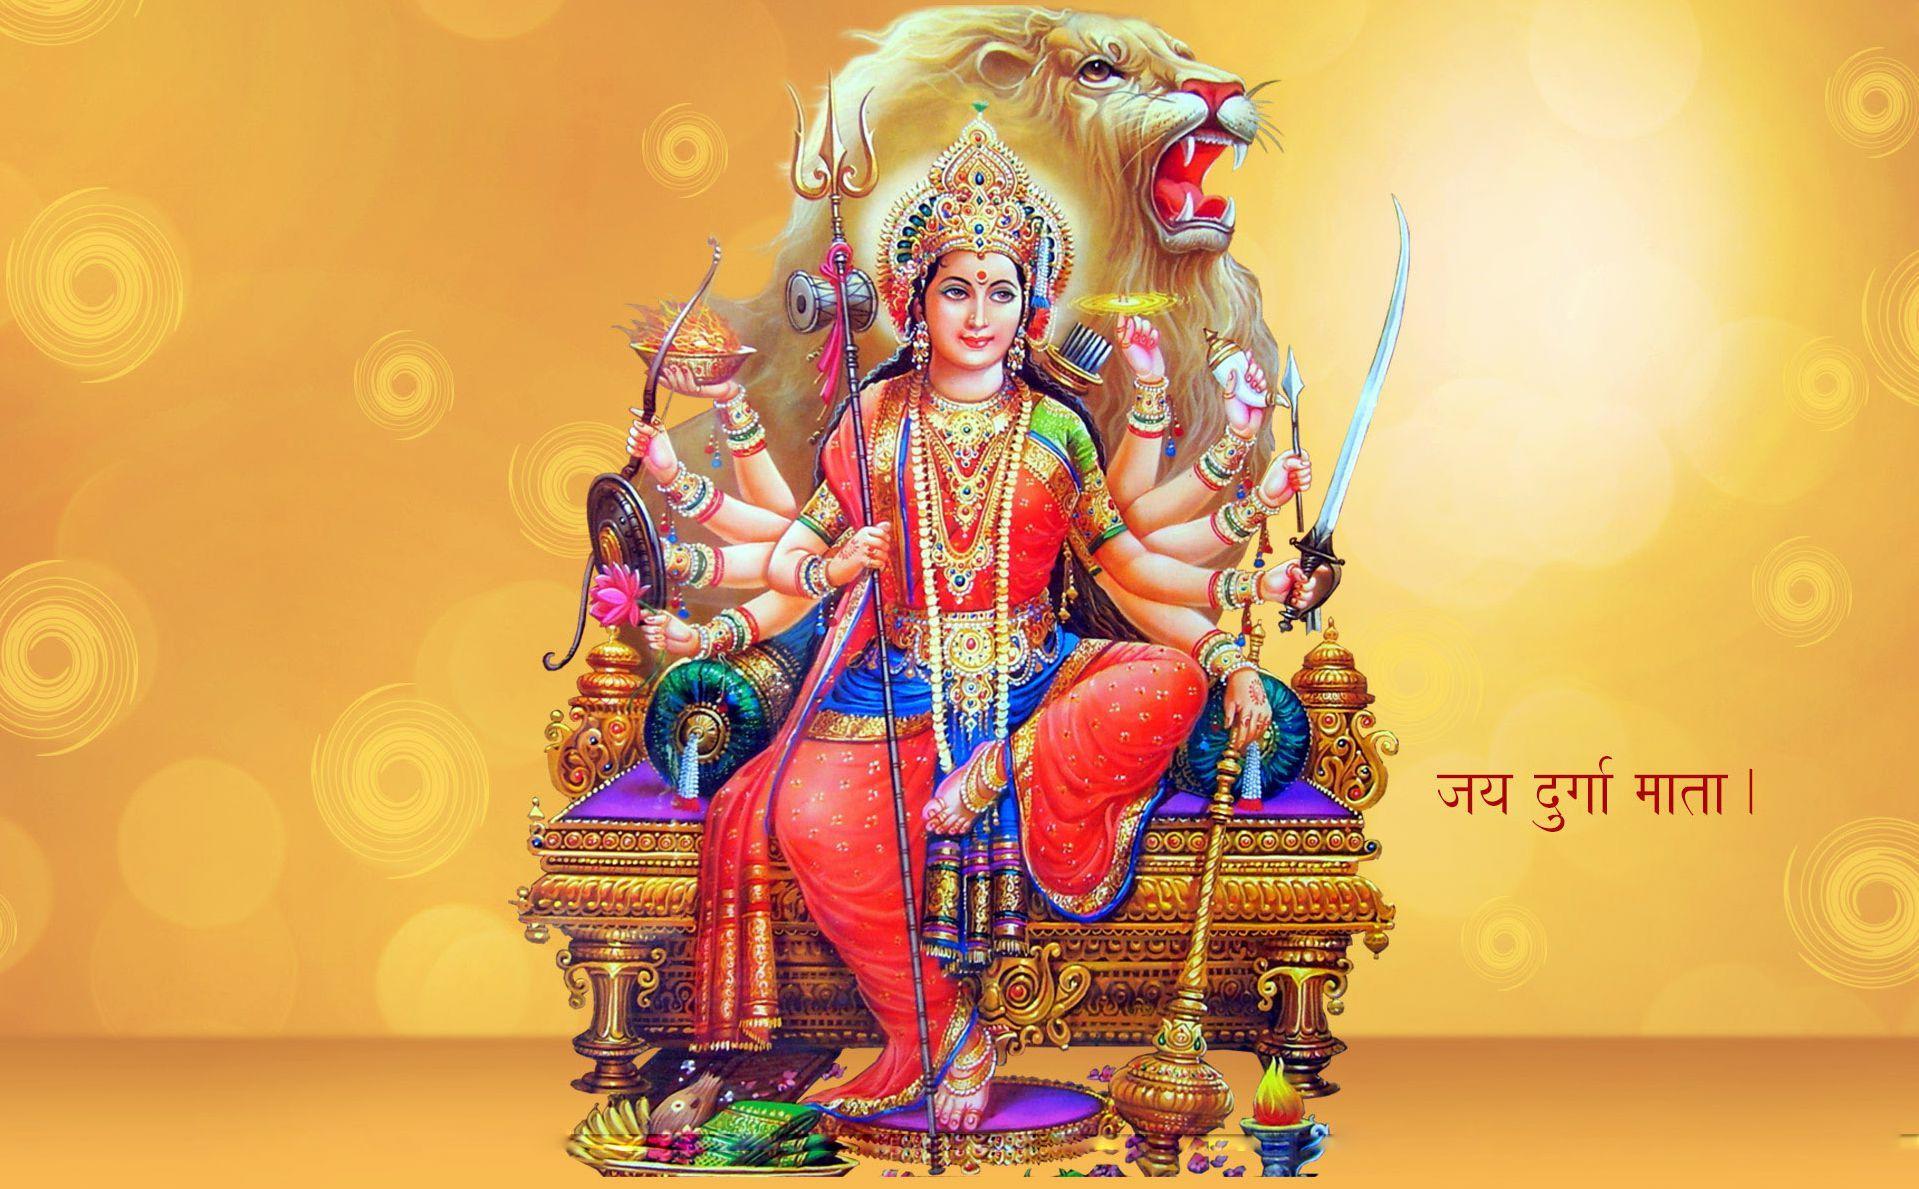 HD Maa Durga Image. Durga Maa Image. Maa Durga Wallpaper